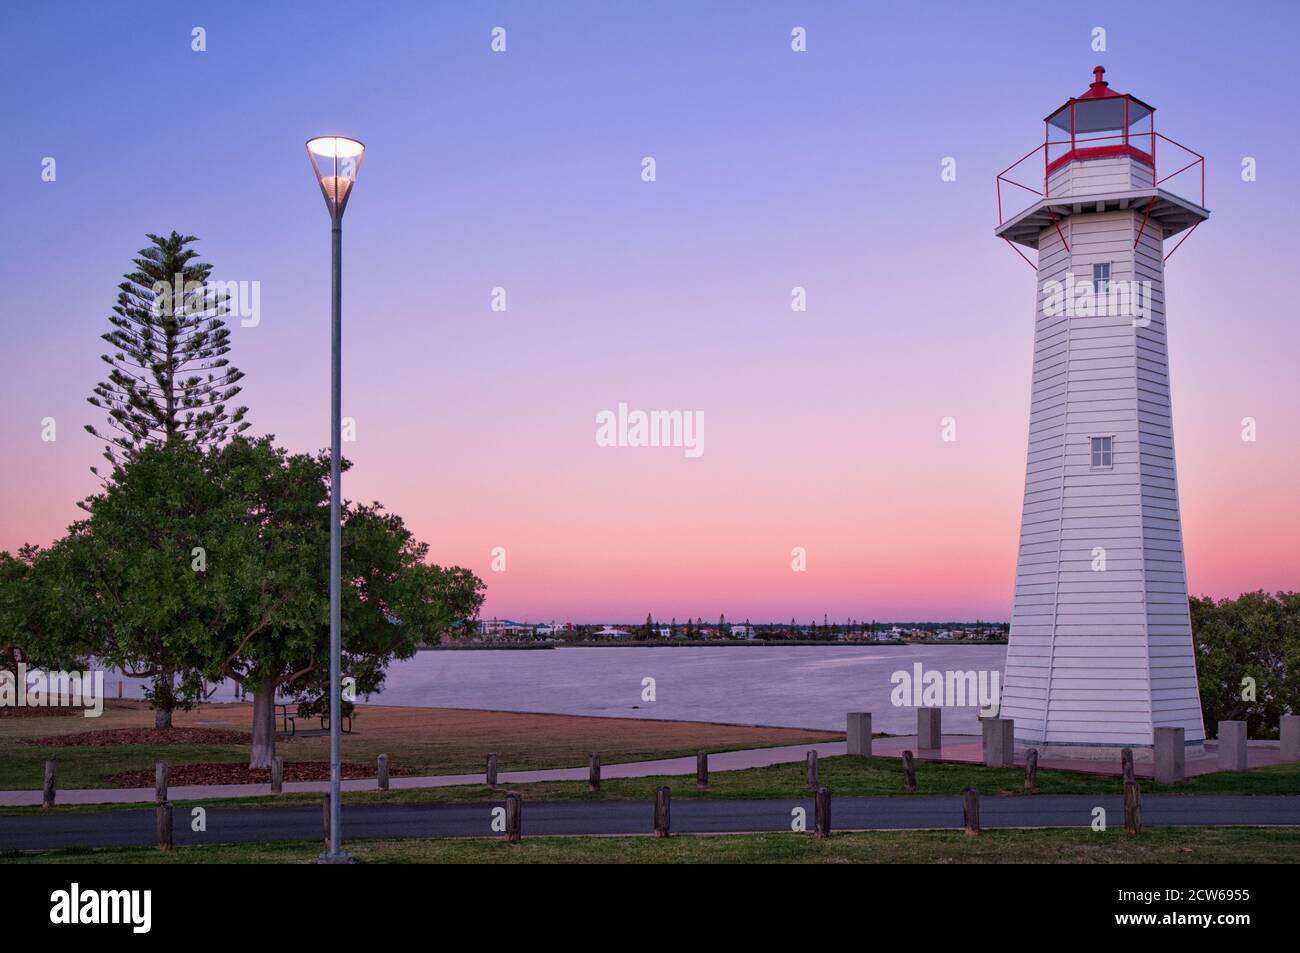 Wunderschöner Sonnenuntergang und nahe der blauen Stunde am Cleveland Point Lighthouse in Brisbane, Queensland in Australien. Stockfoto